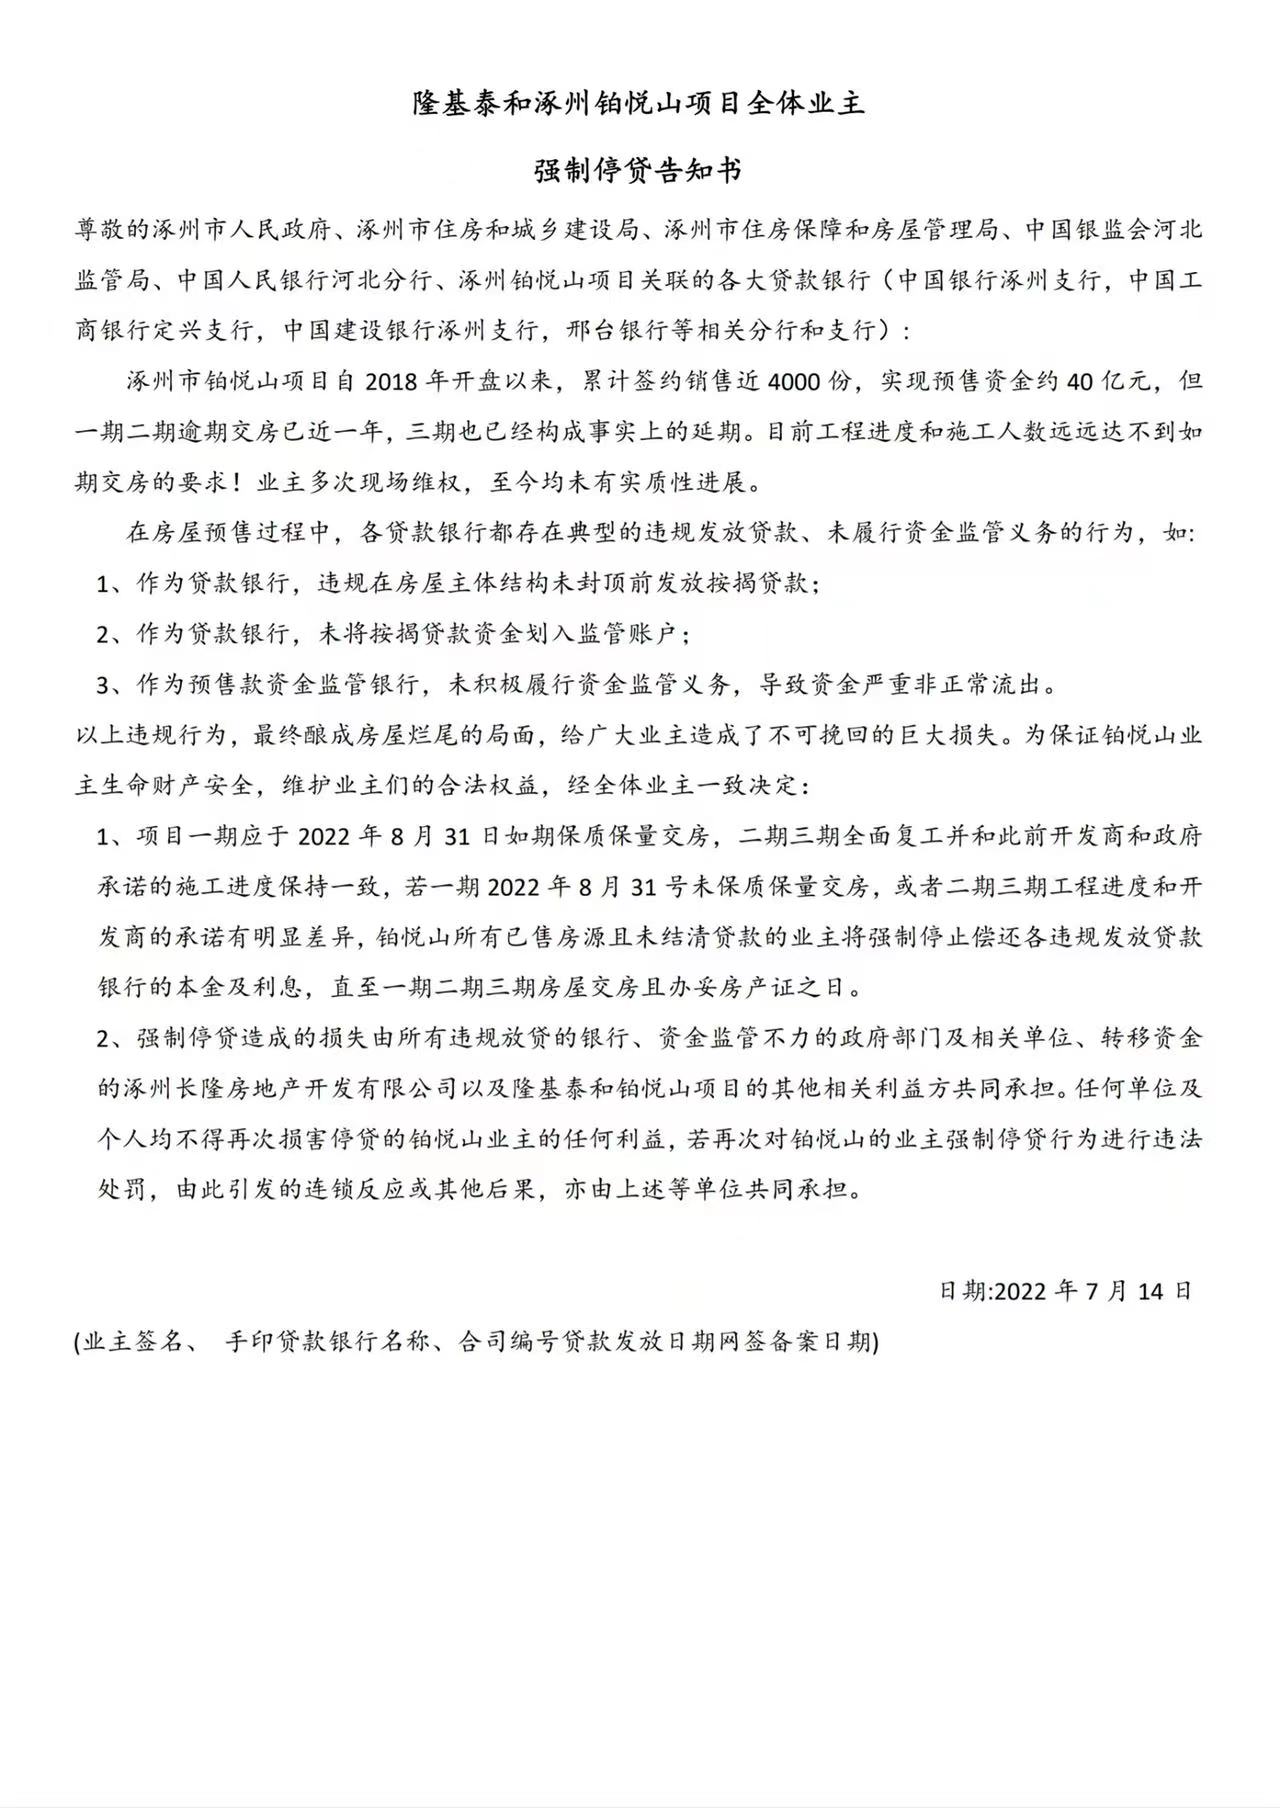 隆基泰和涿州铂悦山项目全体业主强制停贷告知书.jpeg